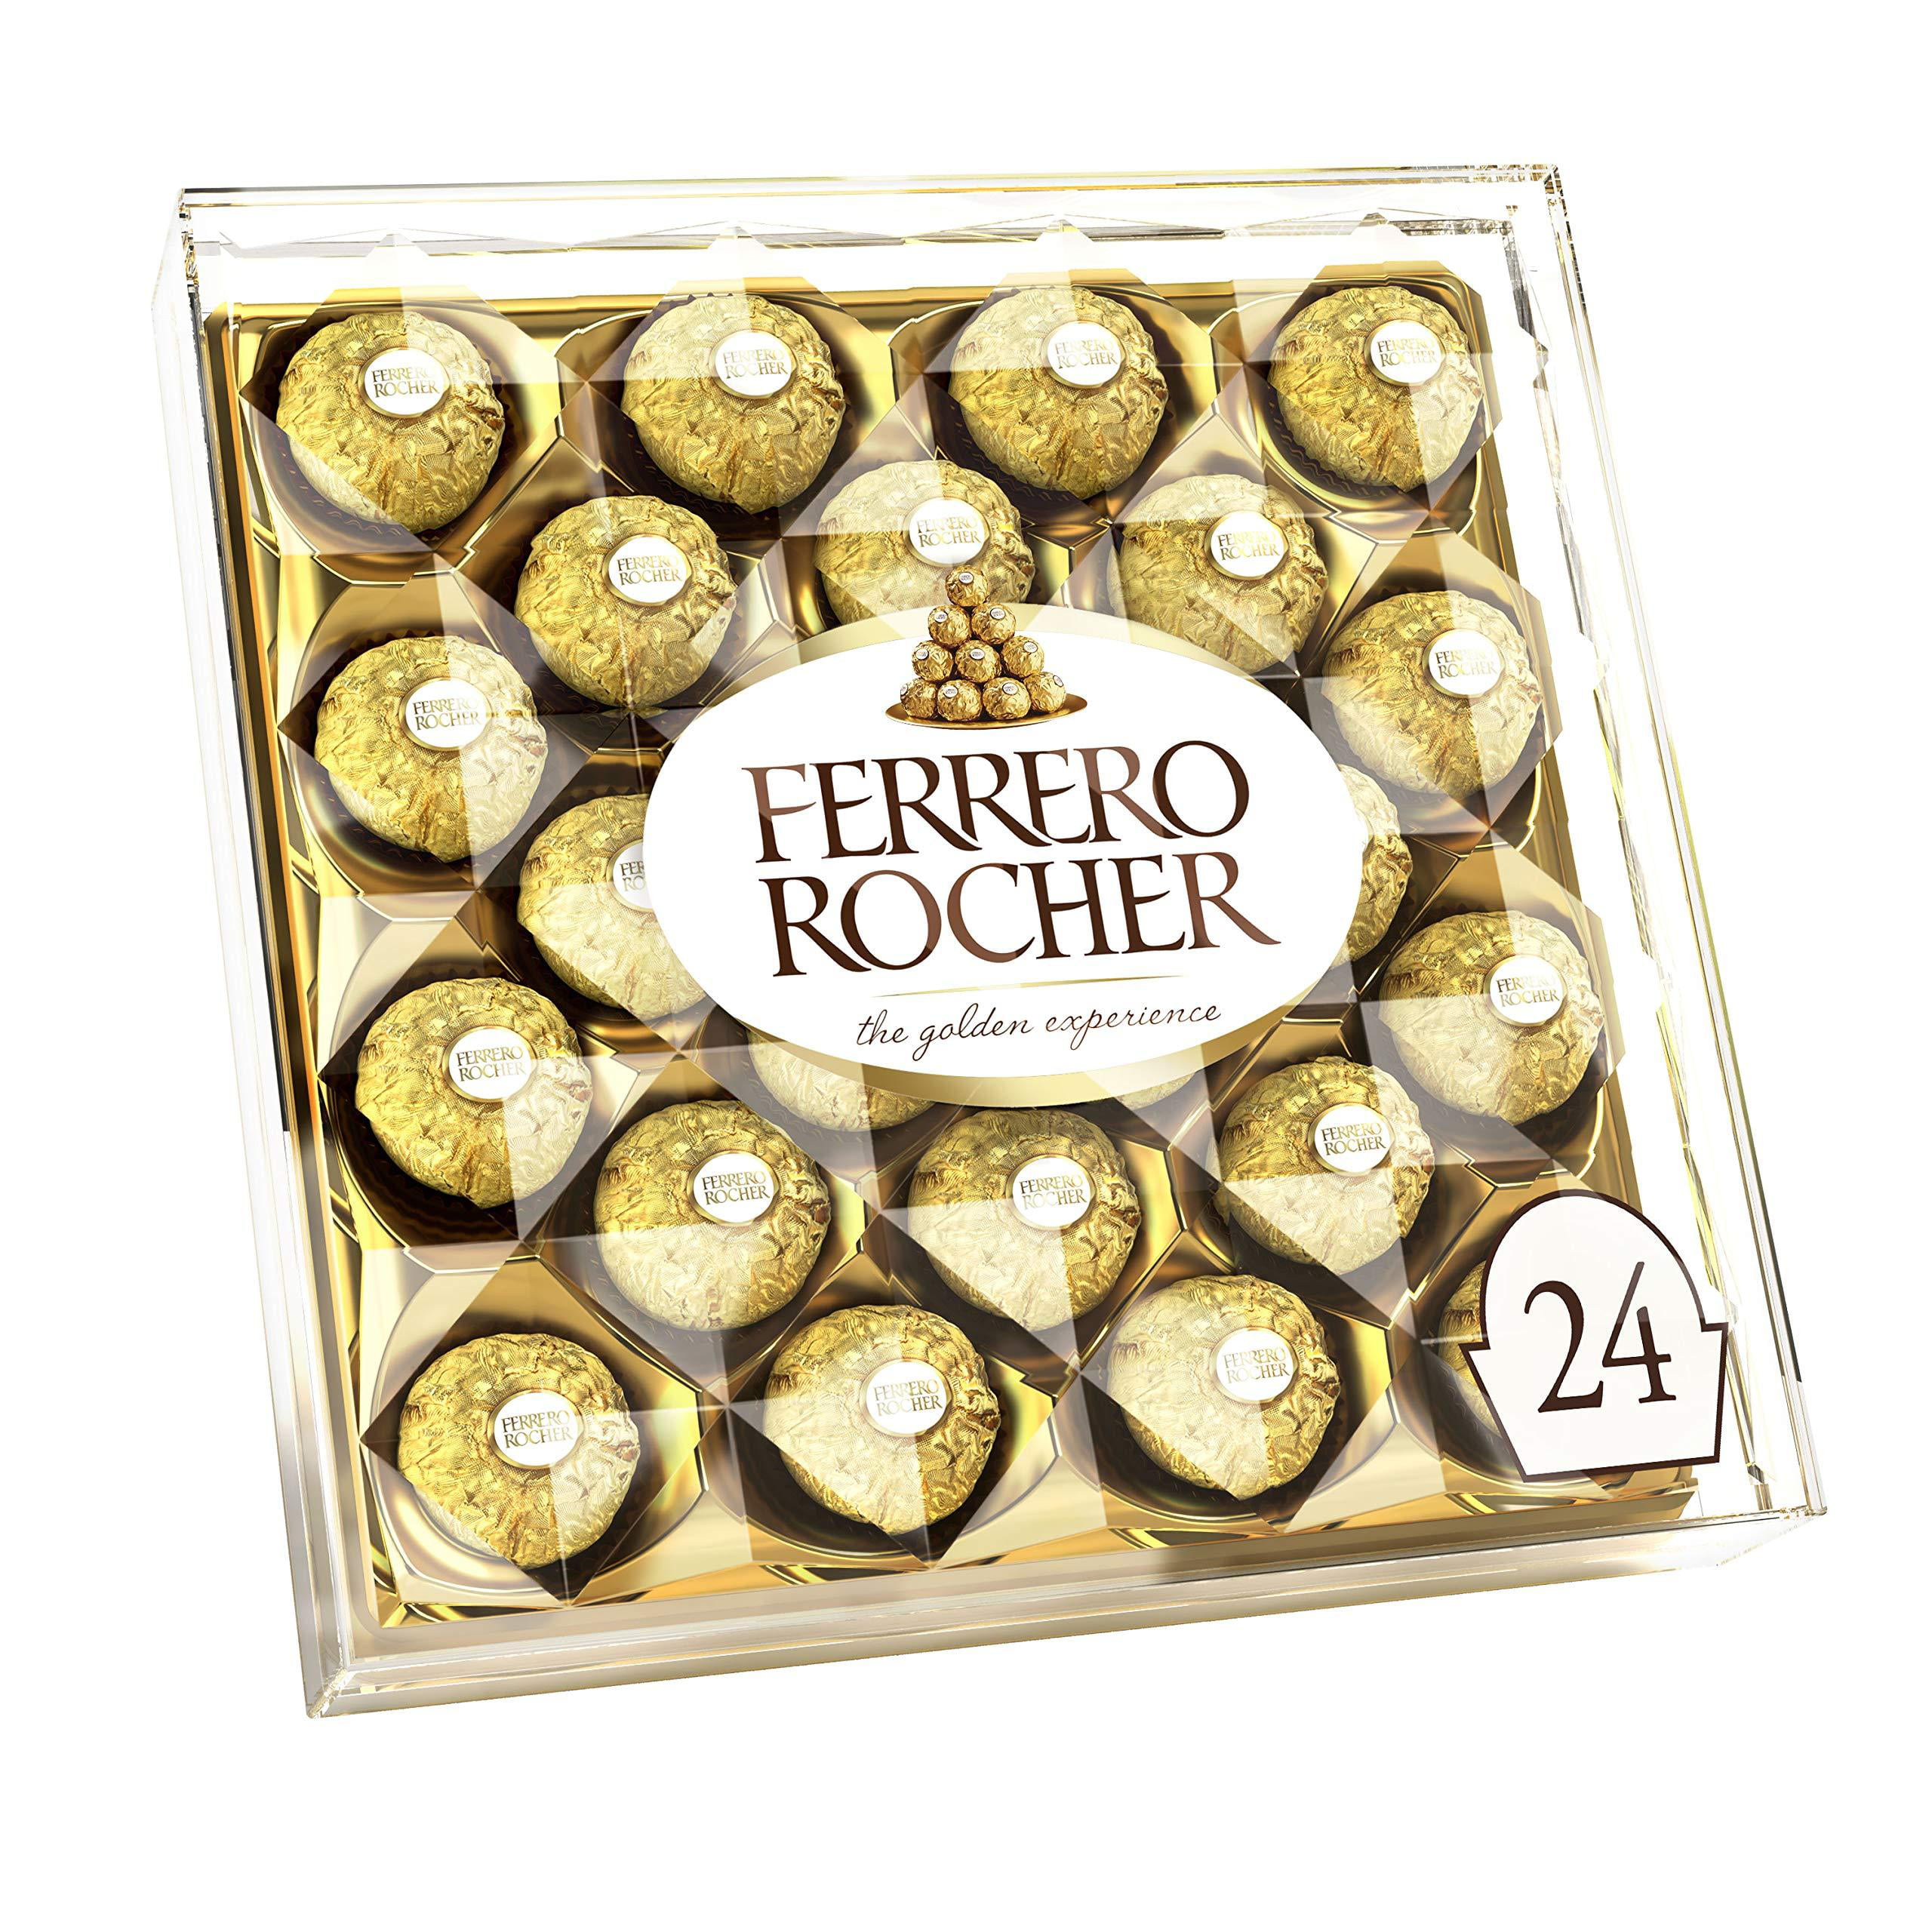 Ferrero Rocher  Chocolate milk, Ferrero rocher, Confectionery